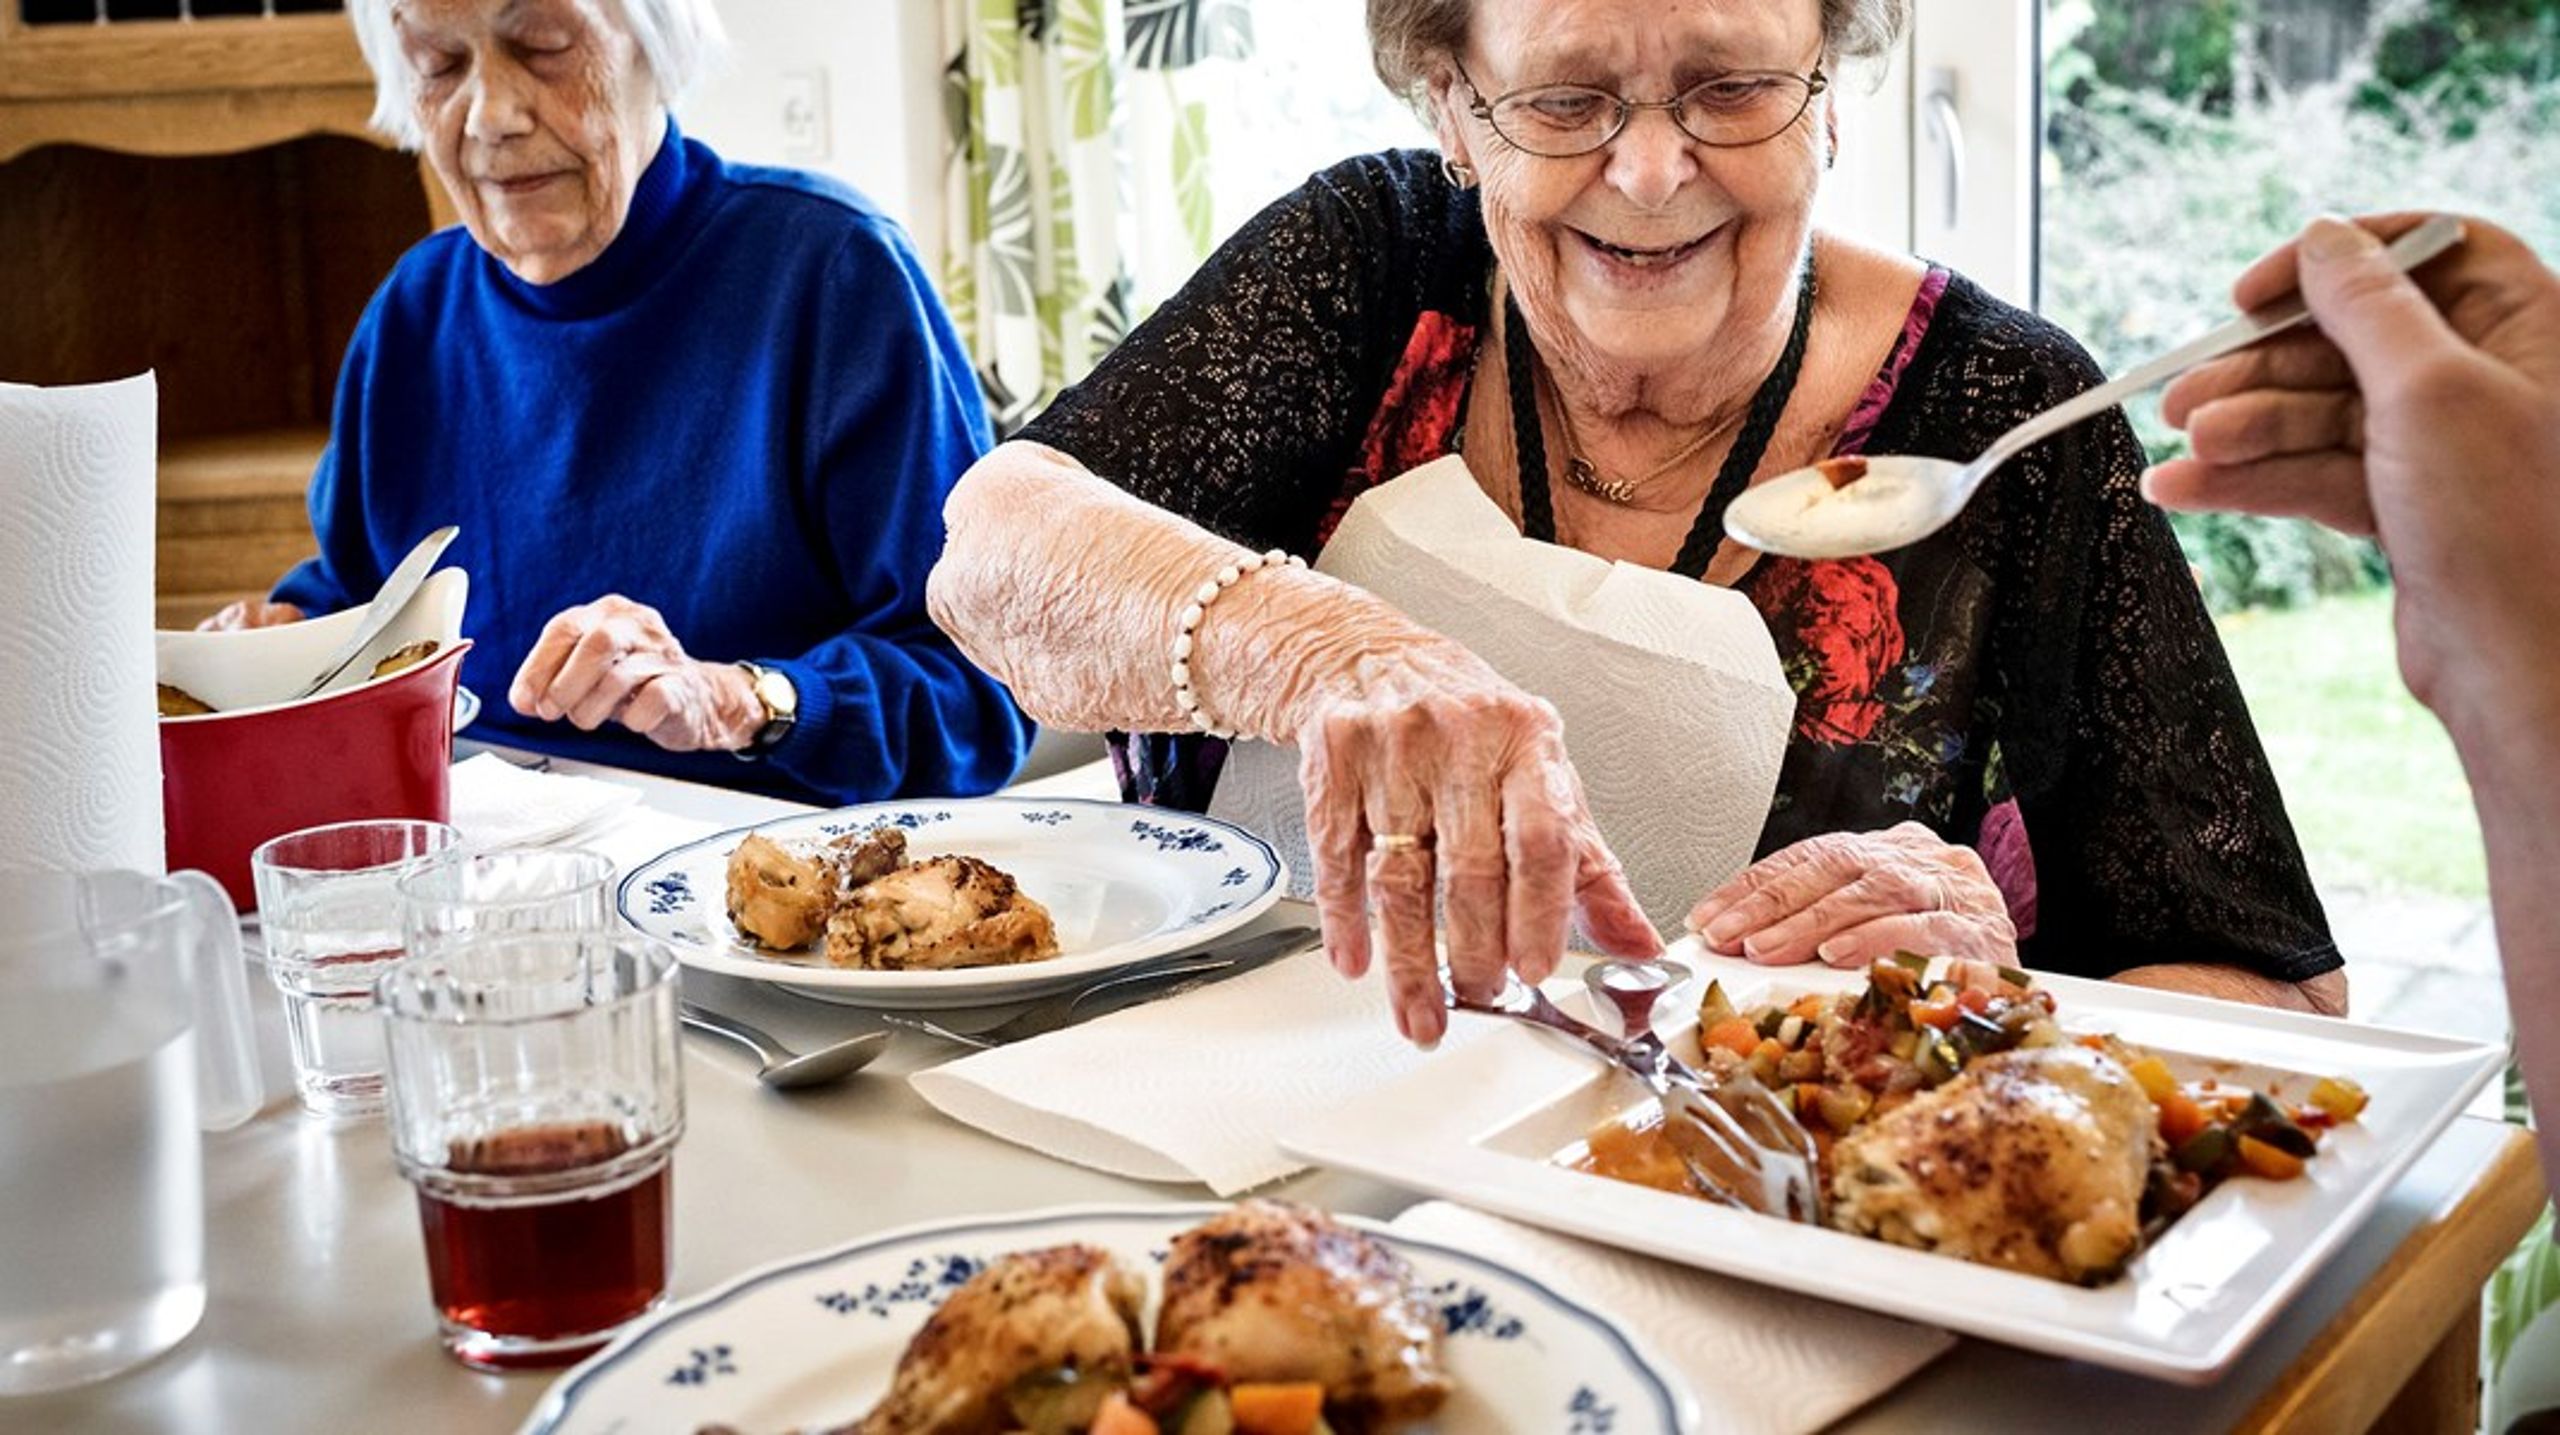 En stor del af måltider i det offentlige er til borgere med særlige ernæringsmæssige behov, eksempelvis småtspisende ældre, skriver Line Munk Damsgaard.